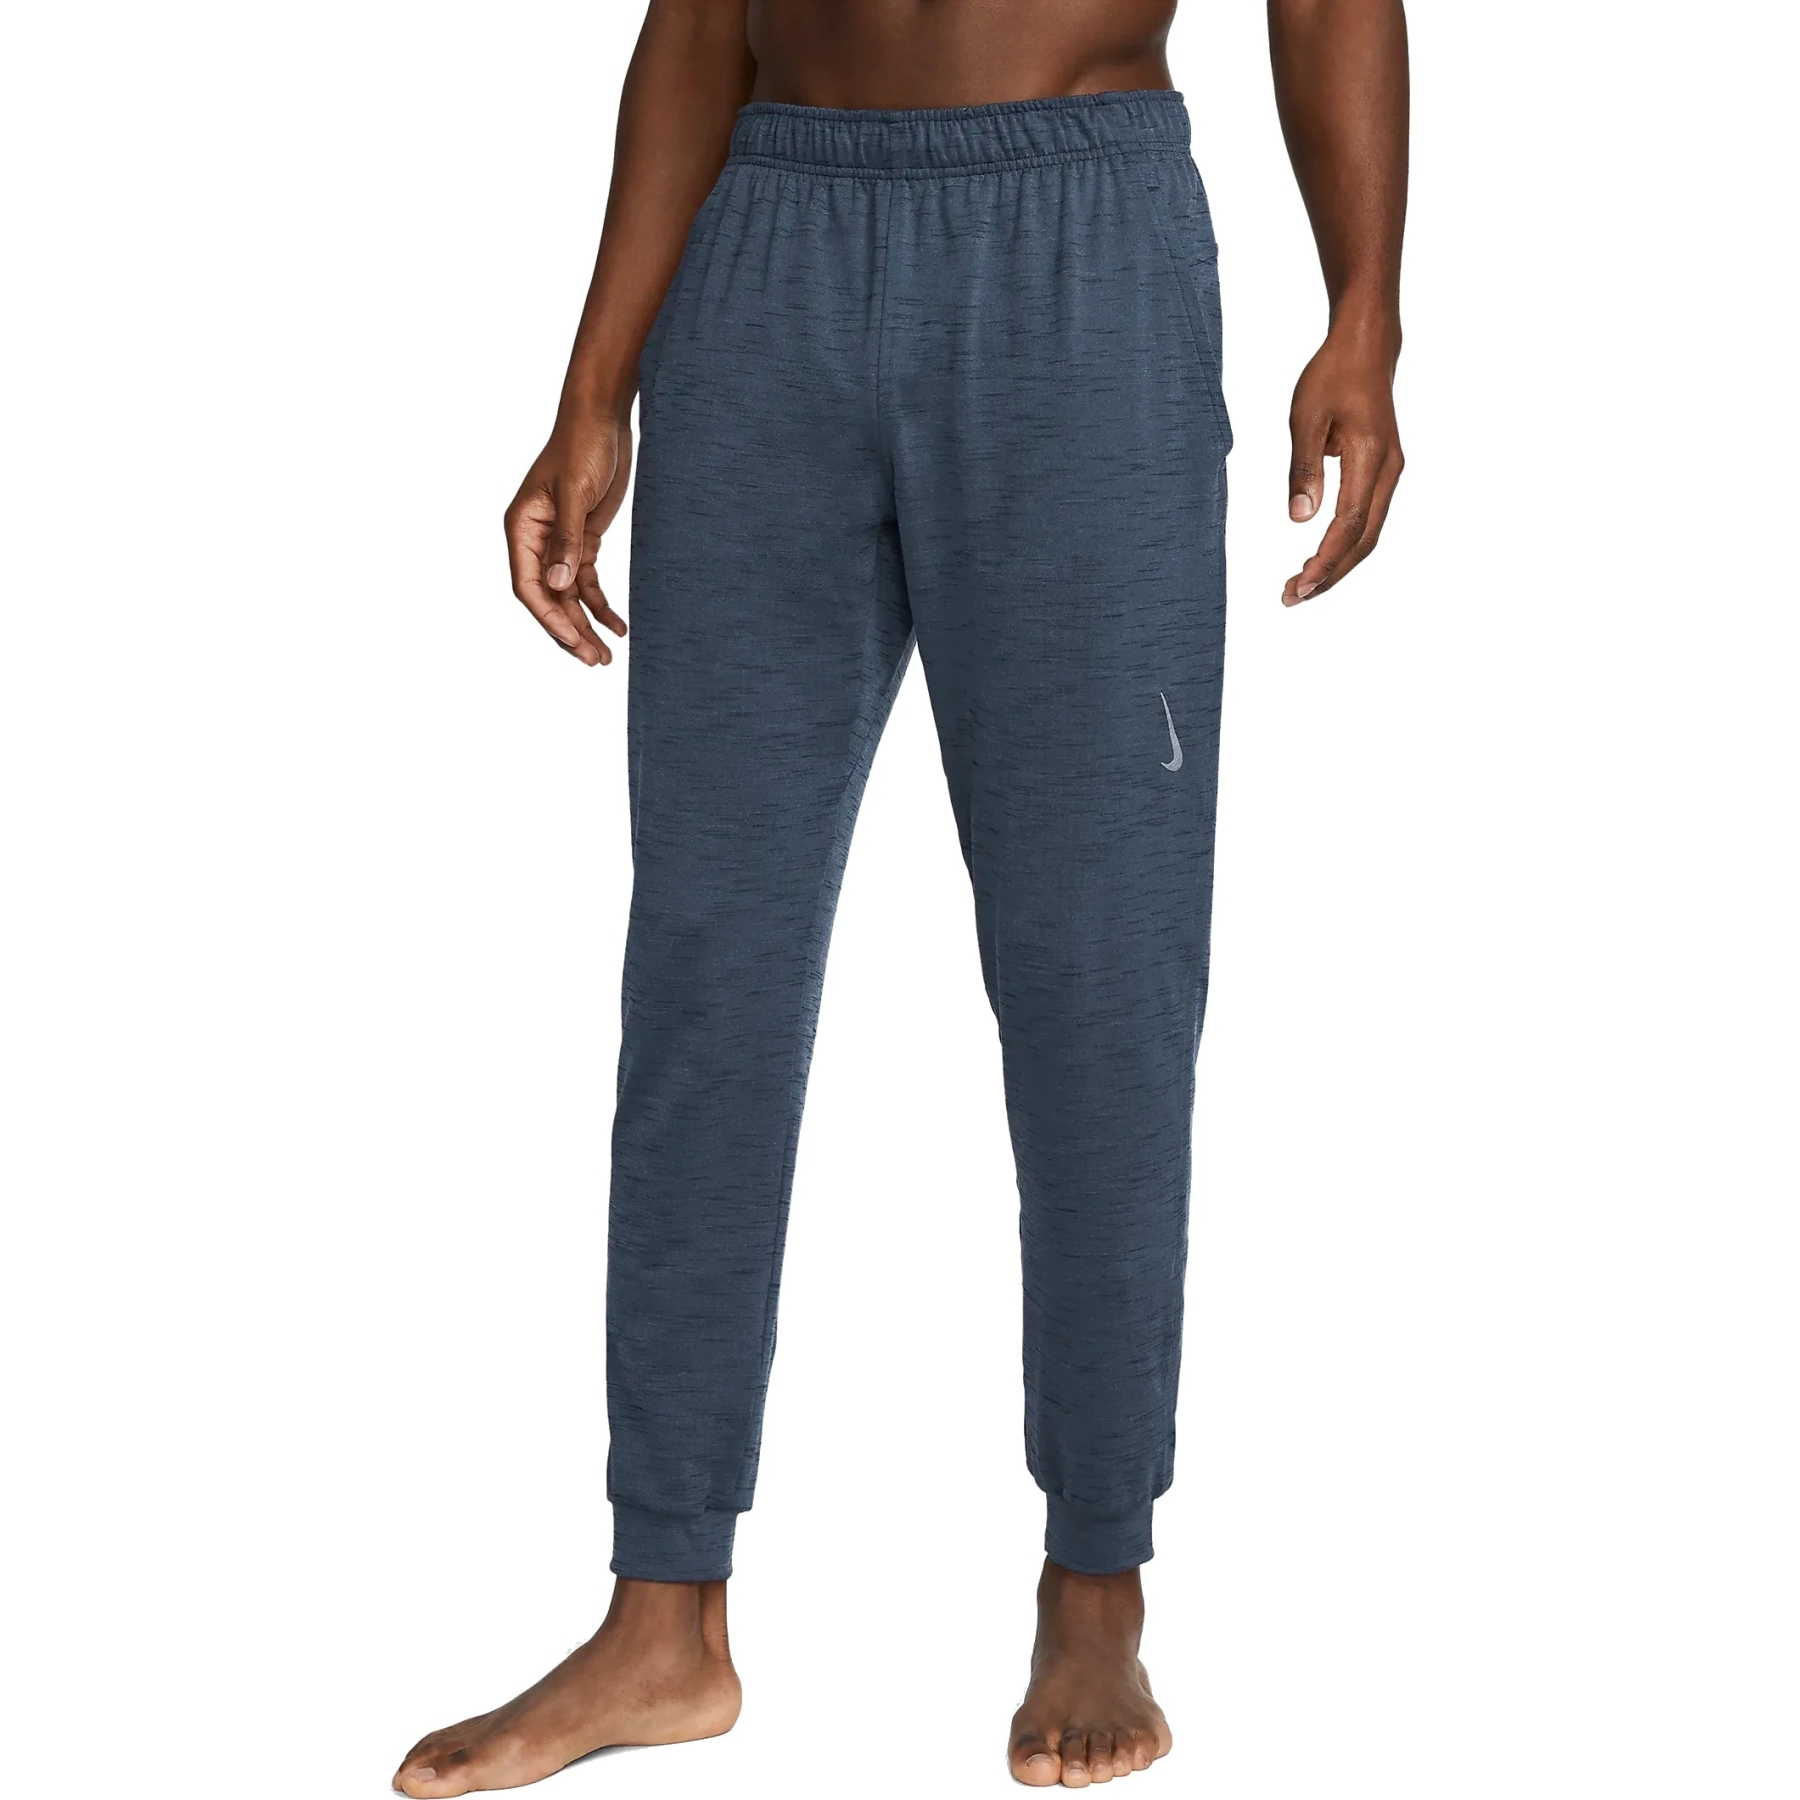 Immagine di Nike Pantaloni da Jogging Uomo - Yoga Dri-FIT - diffused blue/obsidian/gray CZ2208-491